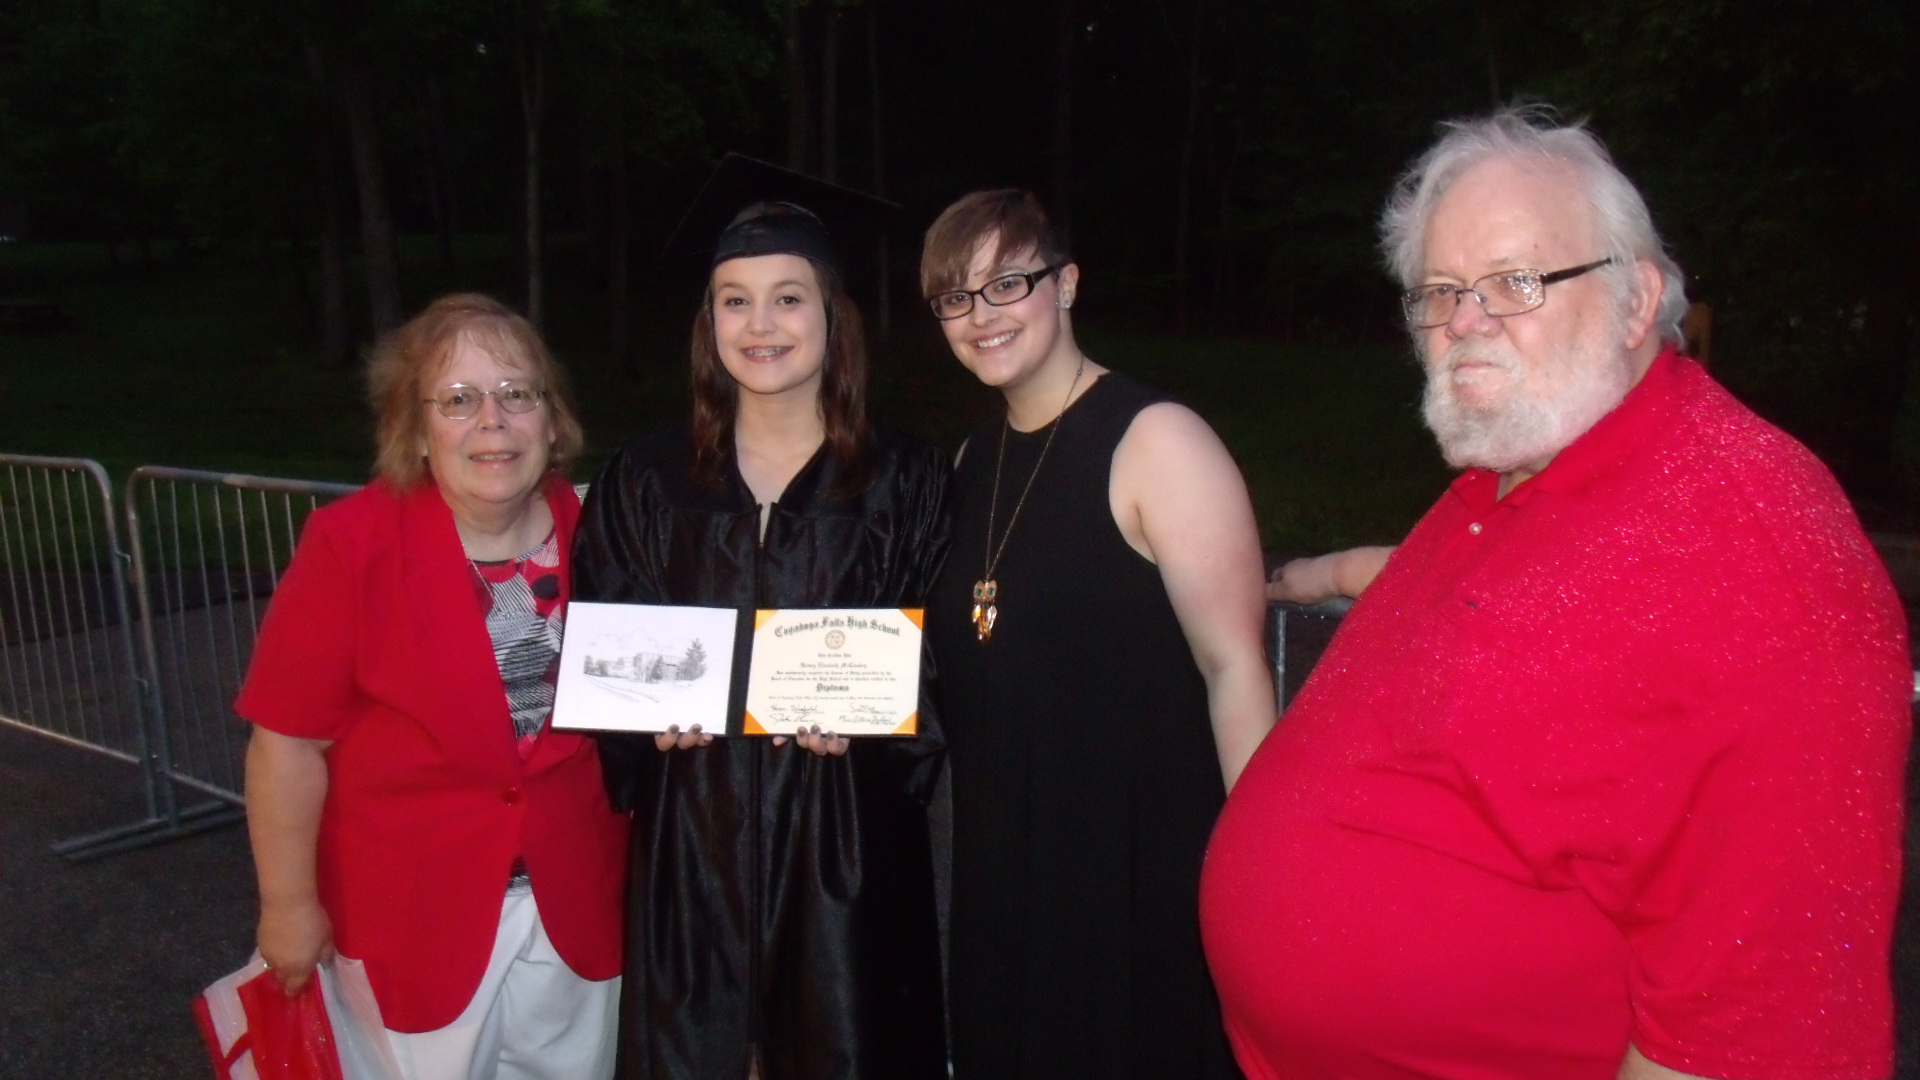 Kelsey's graduation